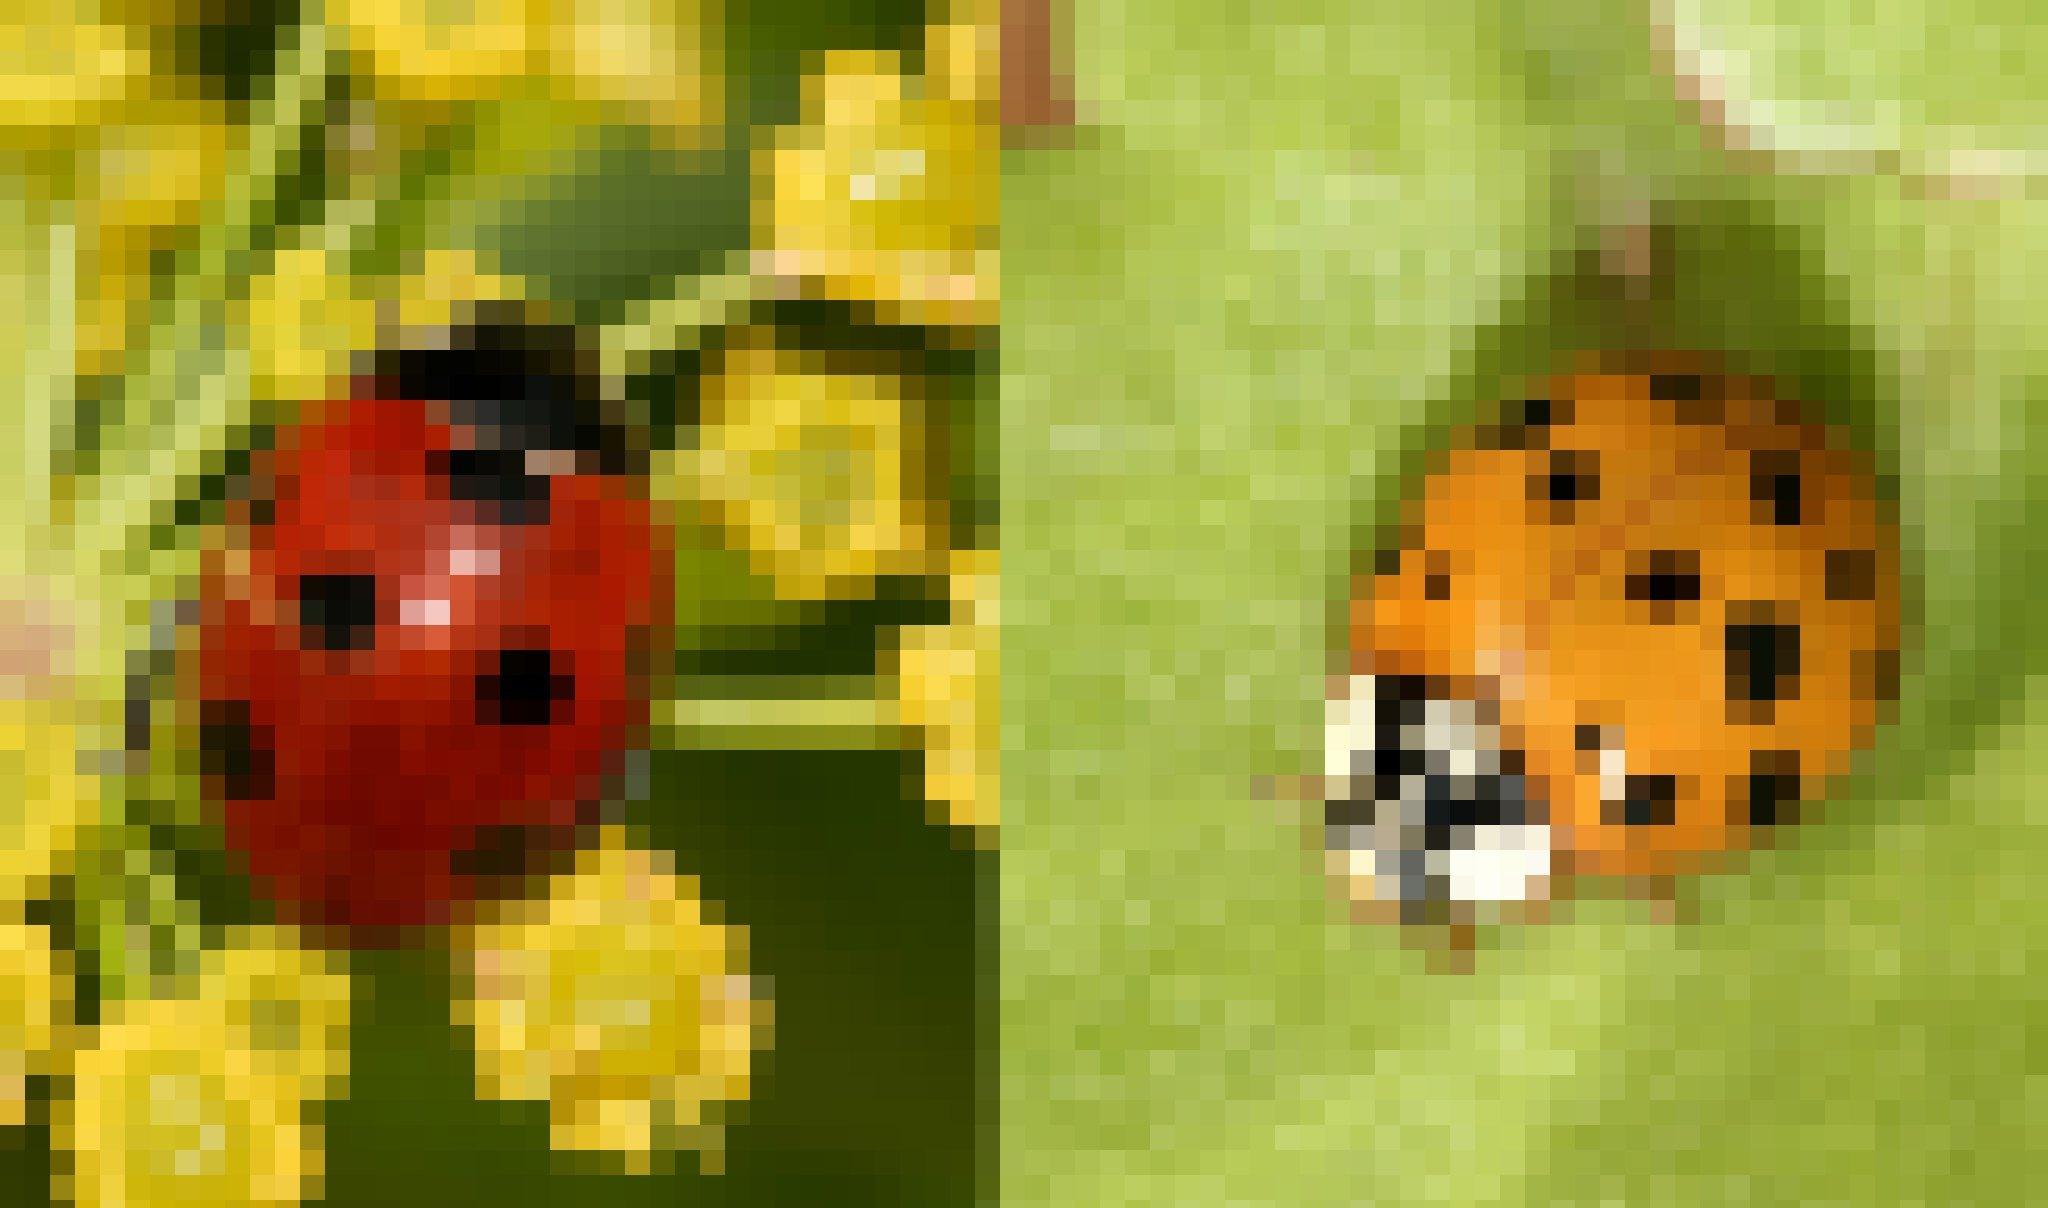 Links ein Marienkäfer mit roten Flügeln und sieben schwarzen Punkten. Rechts einer, dessen Flügel orangefarben sind und viel mehr schwarze Punkte haben.